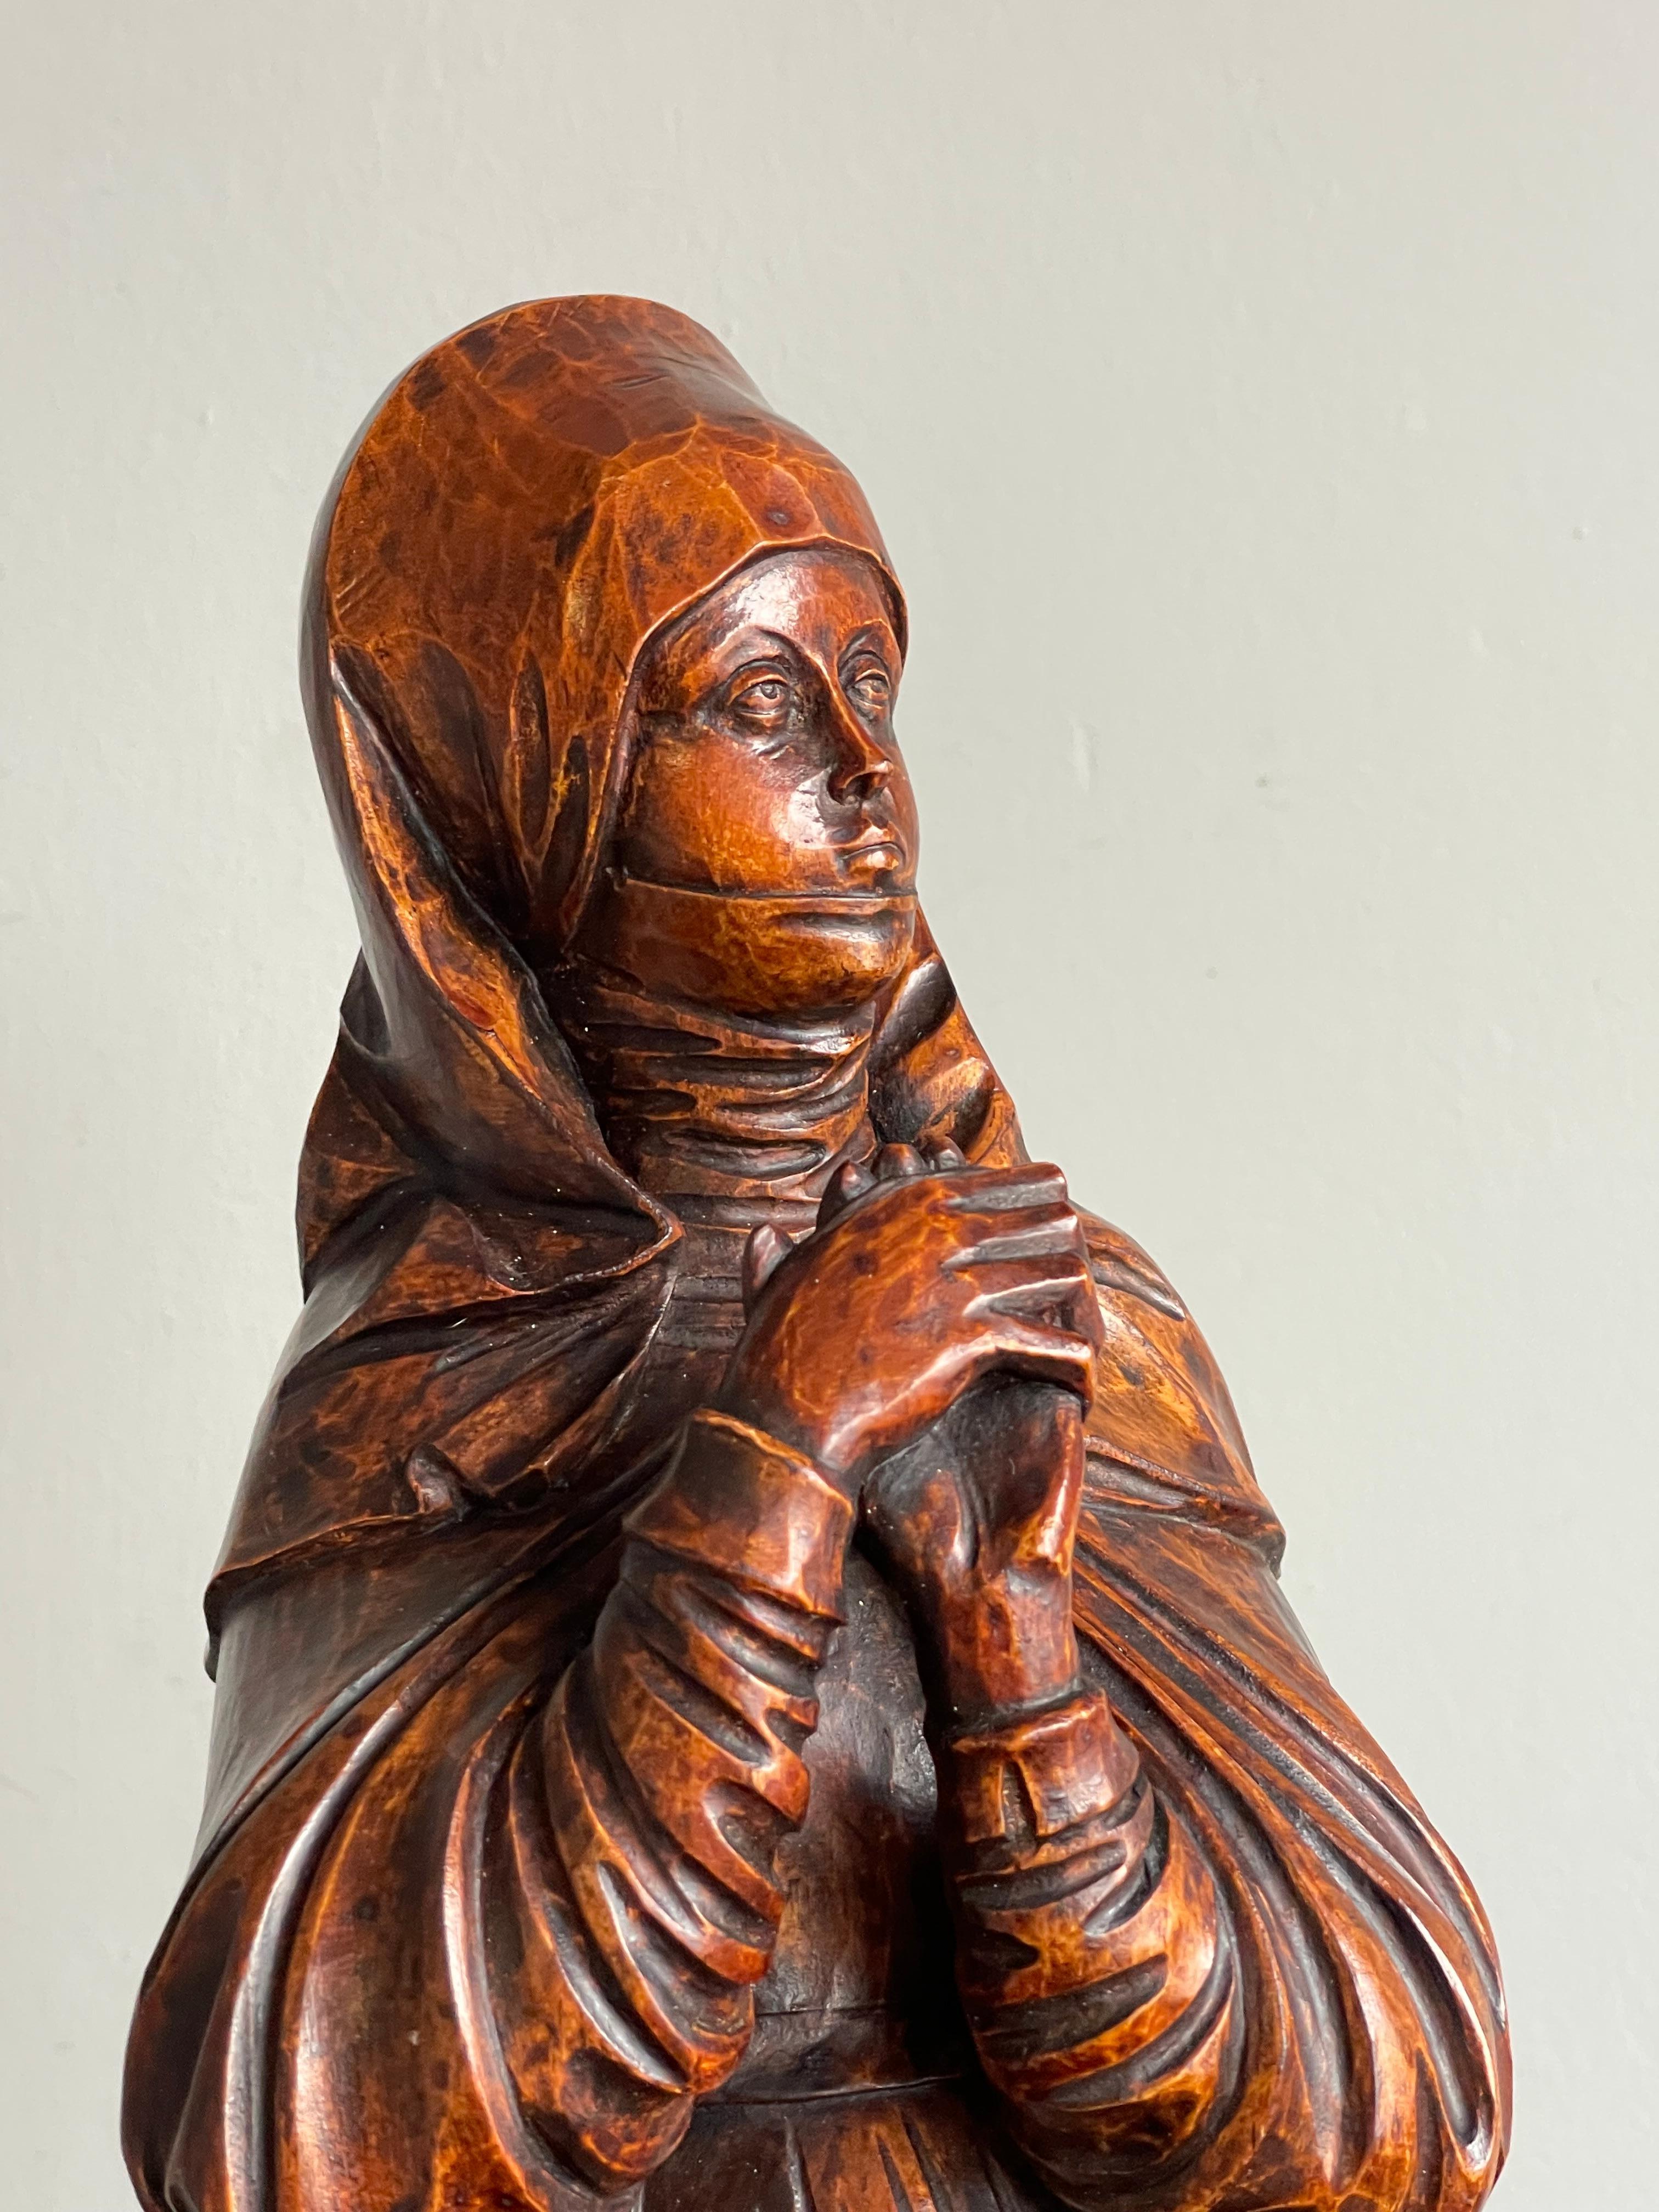 Rare paire d'œuvres d'art dévotionnel sculptées à la main avec une patine étonnante.

Sainte Thérèse d'Ávila, née Teresa Sánchez de Calle y Ahumada, également appelée Sainte Thérèse de Jésus (1515-1582), est une noble espagnole qui choisit la vie